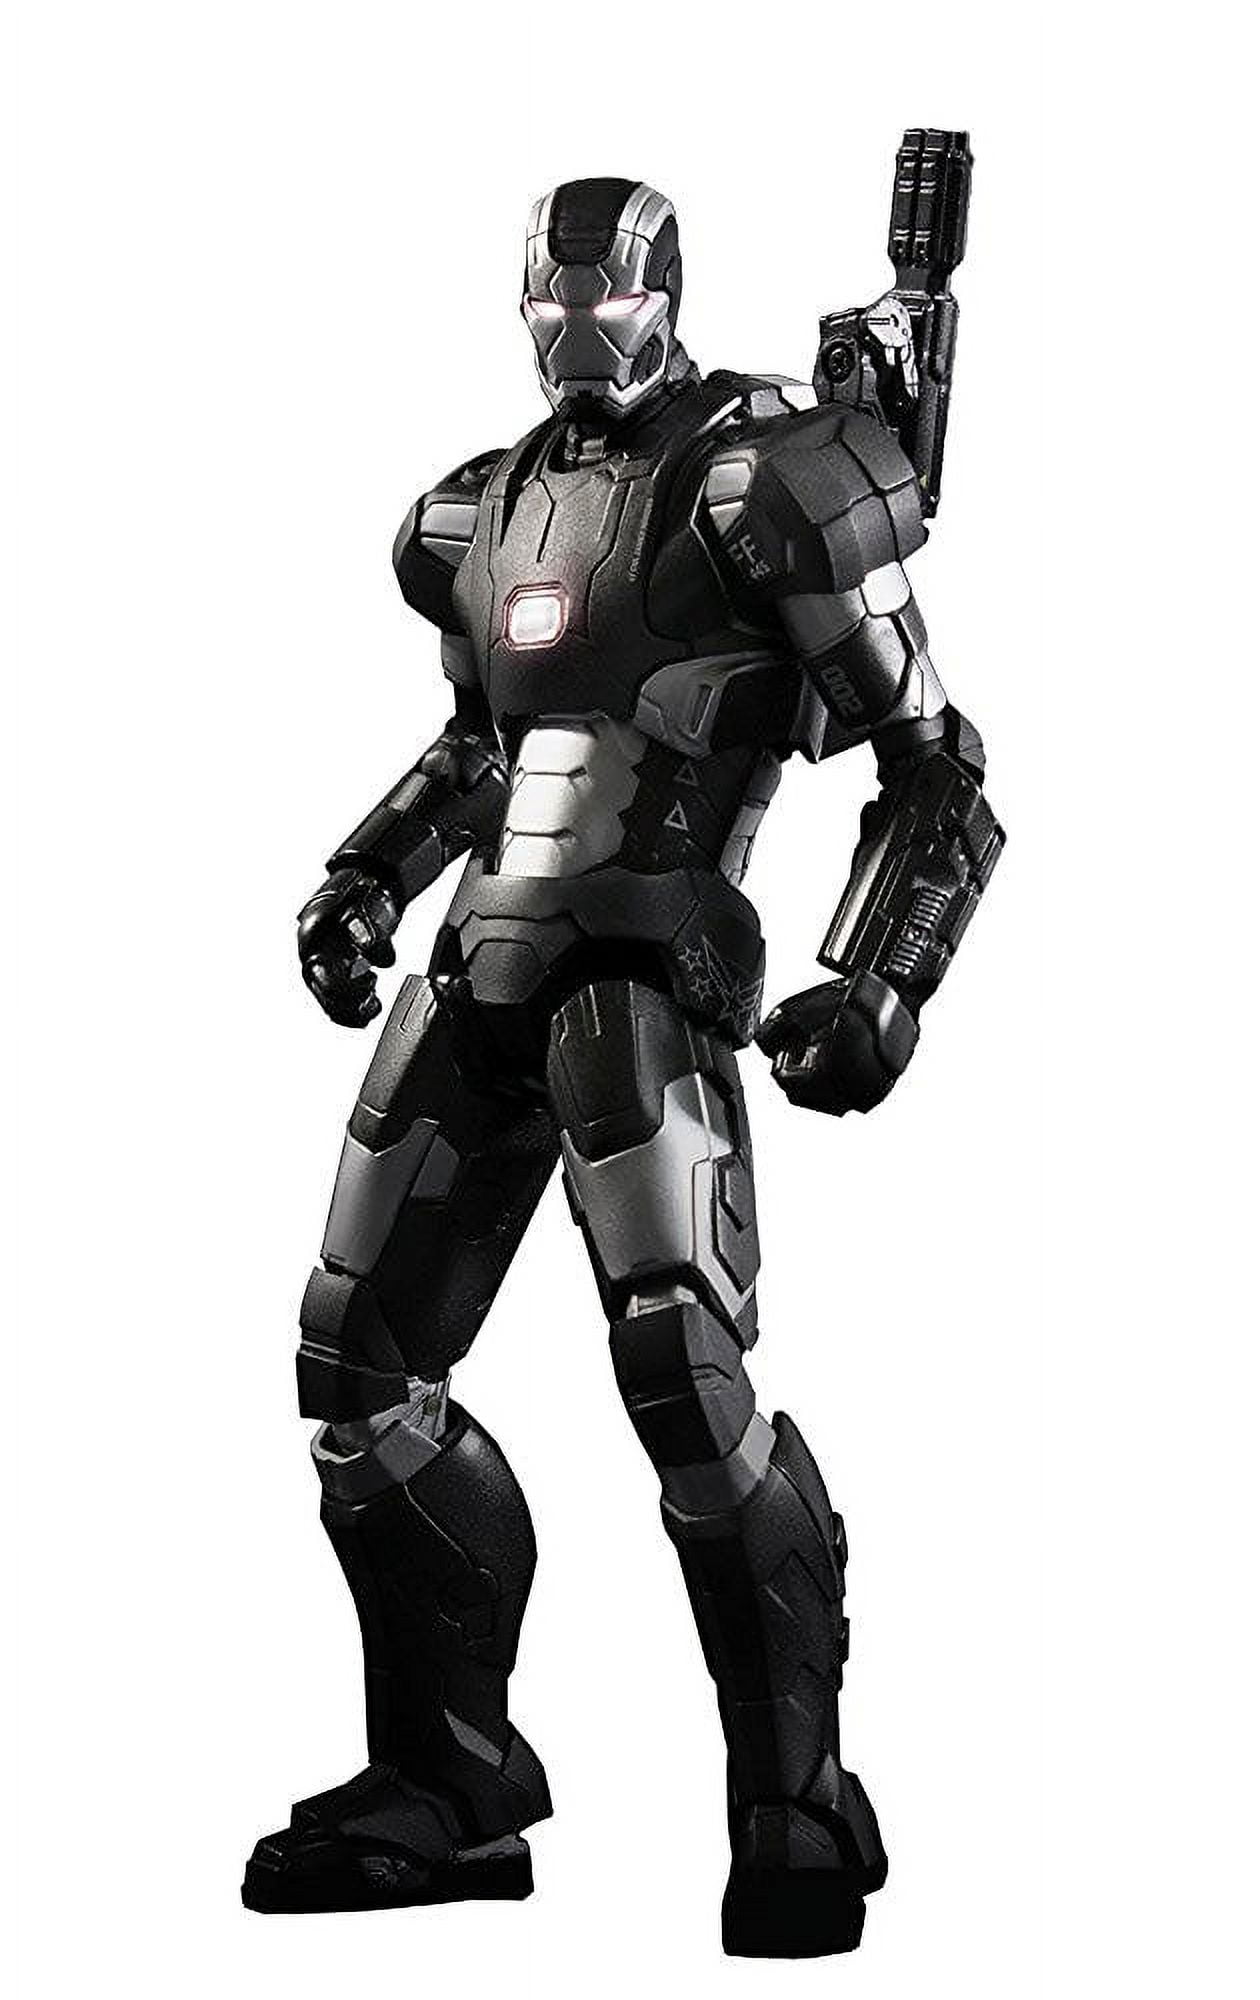 Iron Man: War Machine MK2 Helmet (Iron Man: 3)